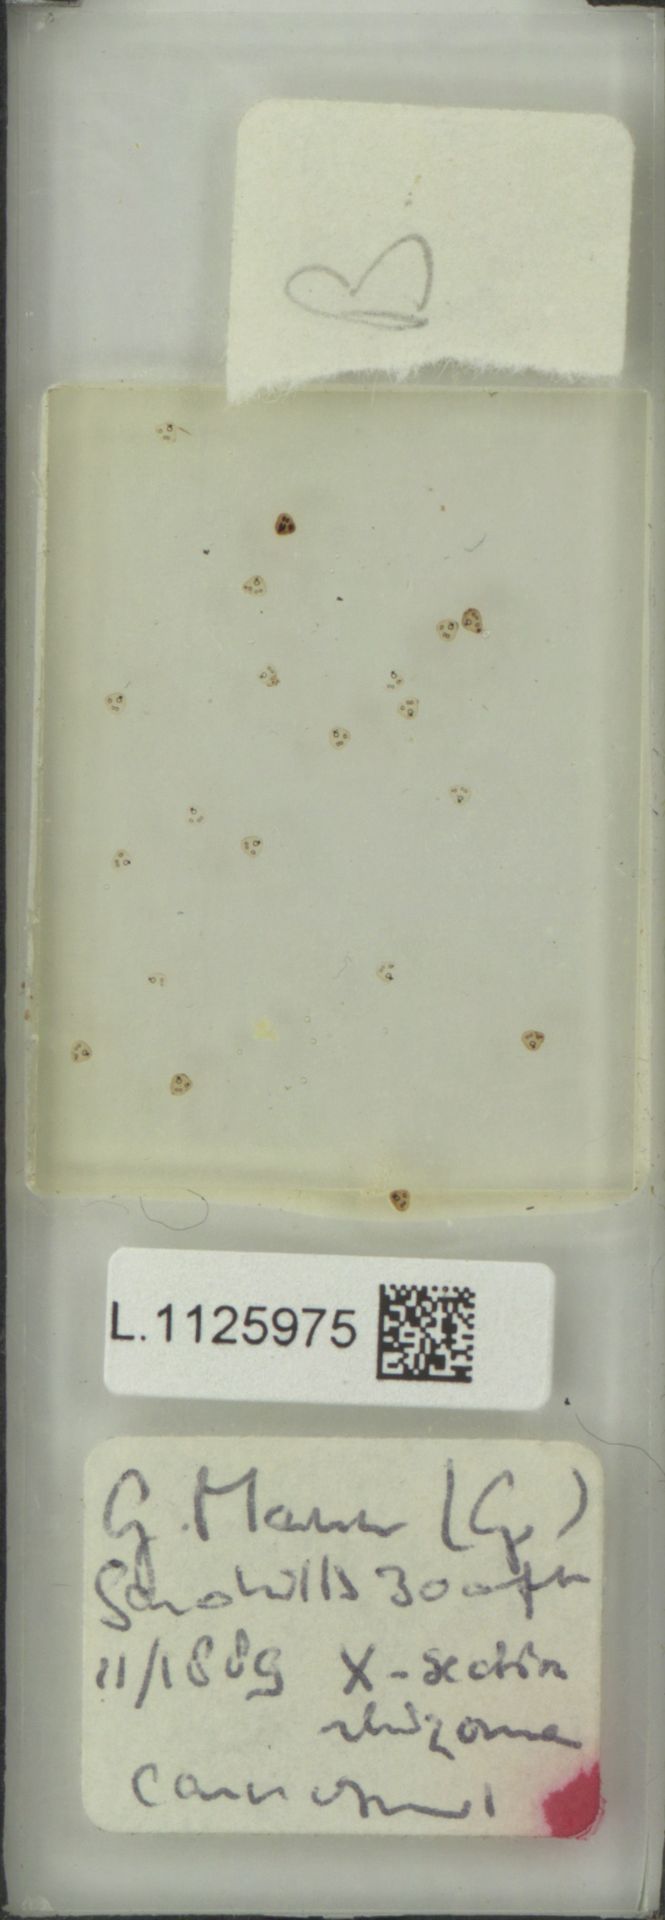 Lemmaphyllum carnosum image